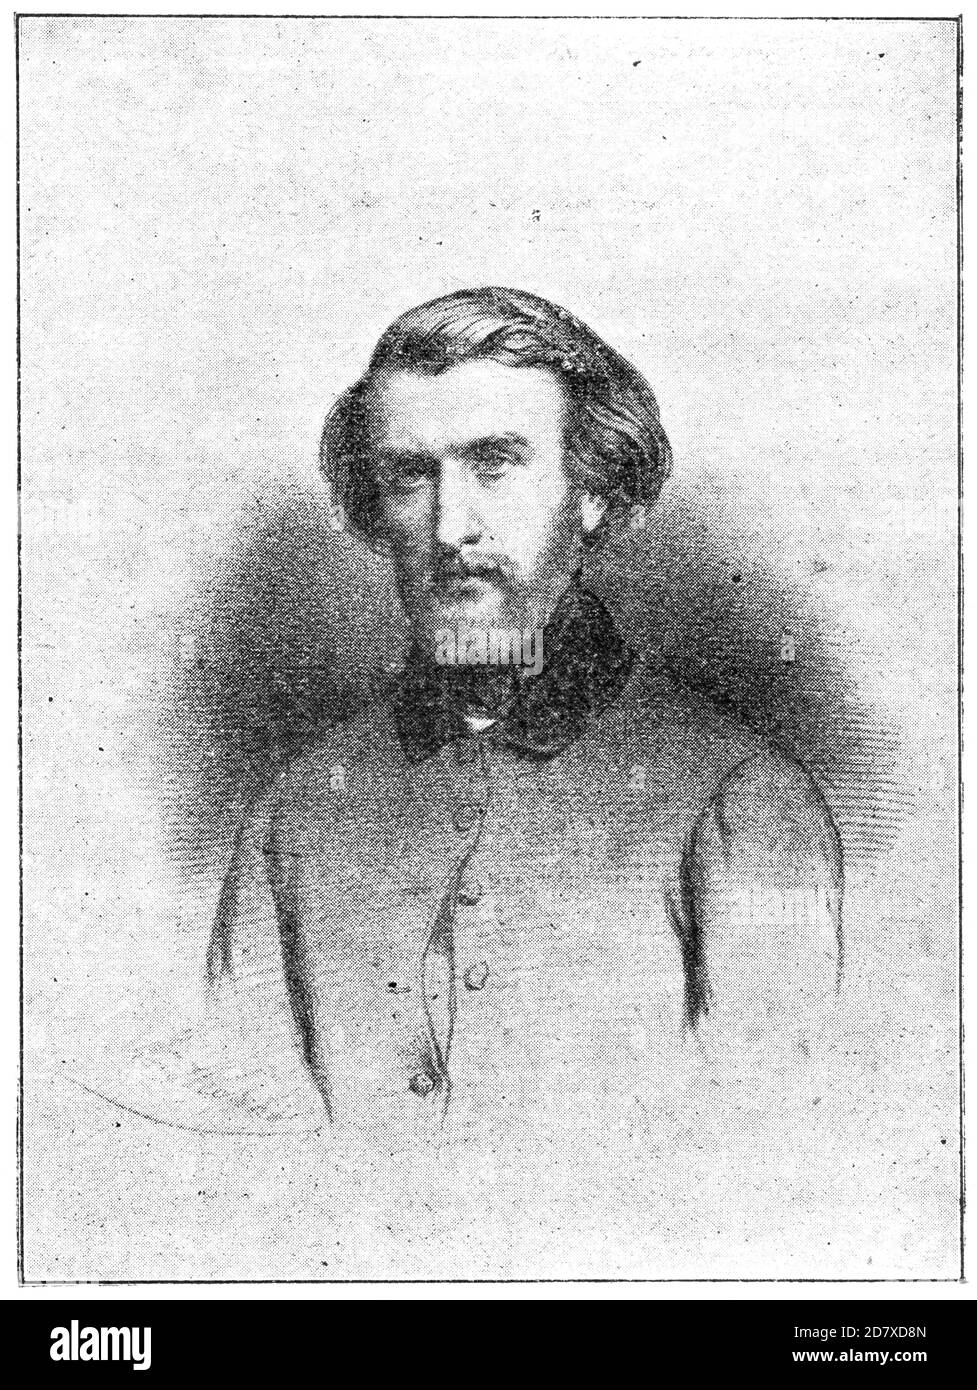 Portrait von Ambroise Thomas - ein französischer Komponist und Lehrer, bekannt durch seine Opern Mignon (1866) und Hamlet (1868). Illustration des 19. Jahrhunderts. Weißer Hintergrund. Stockfoto